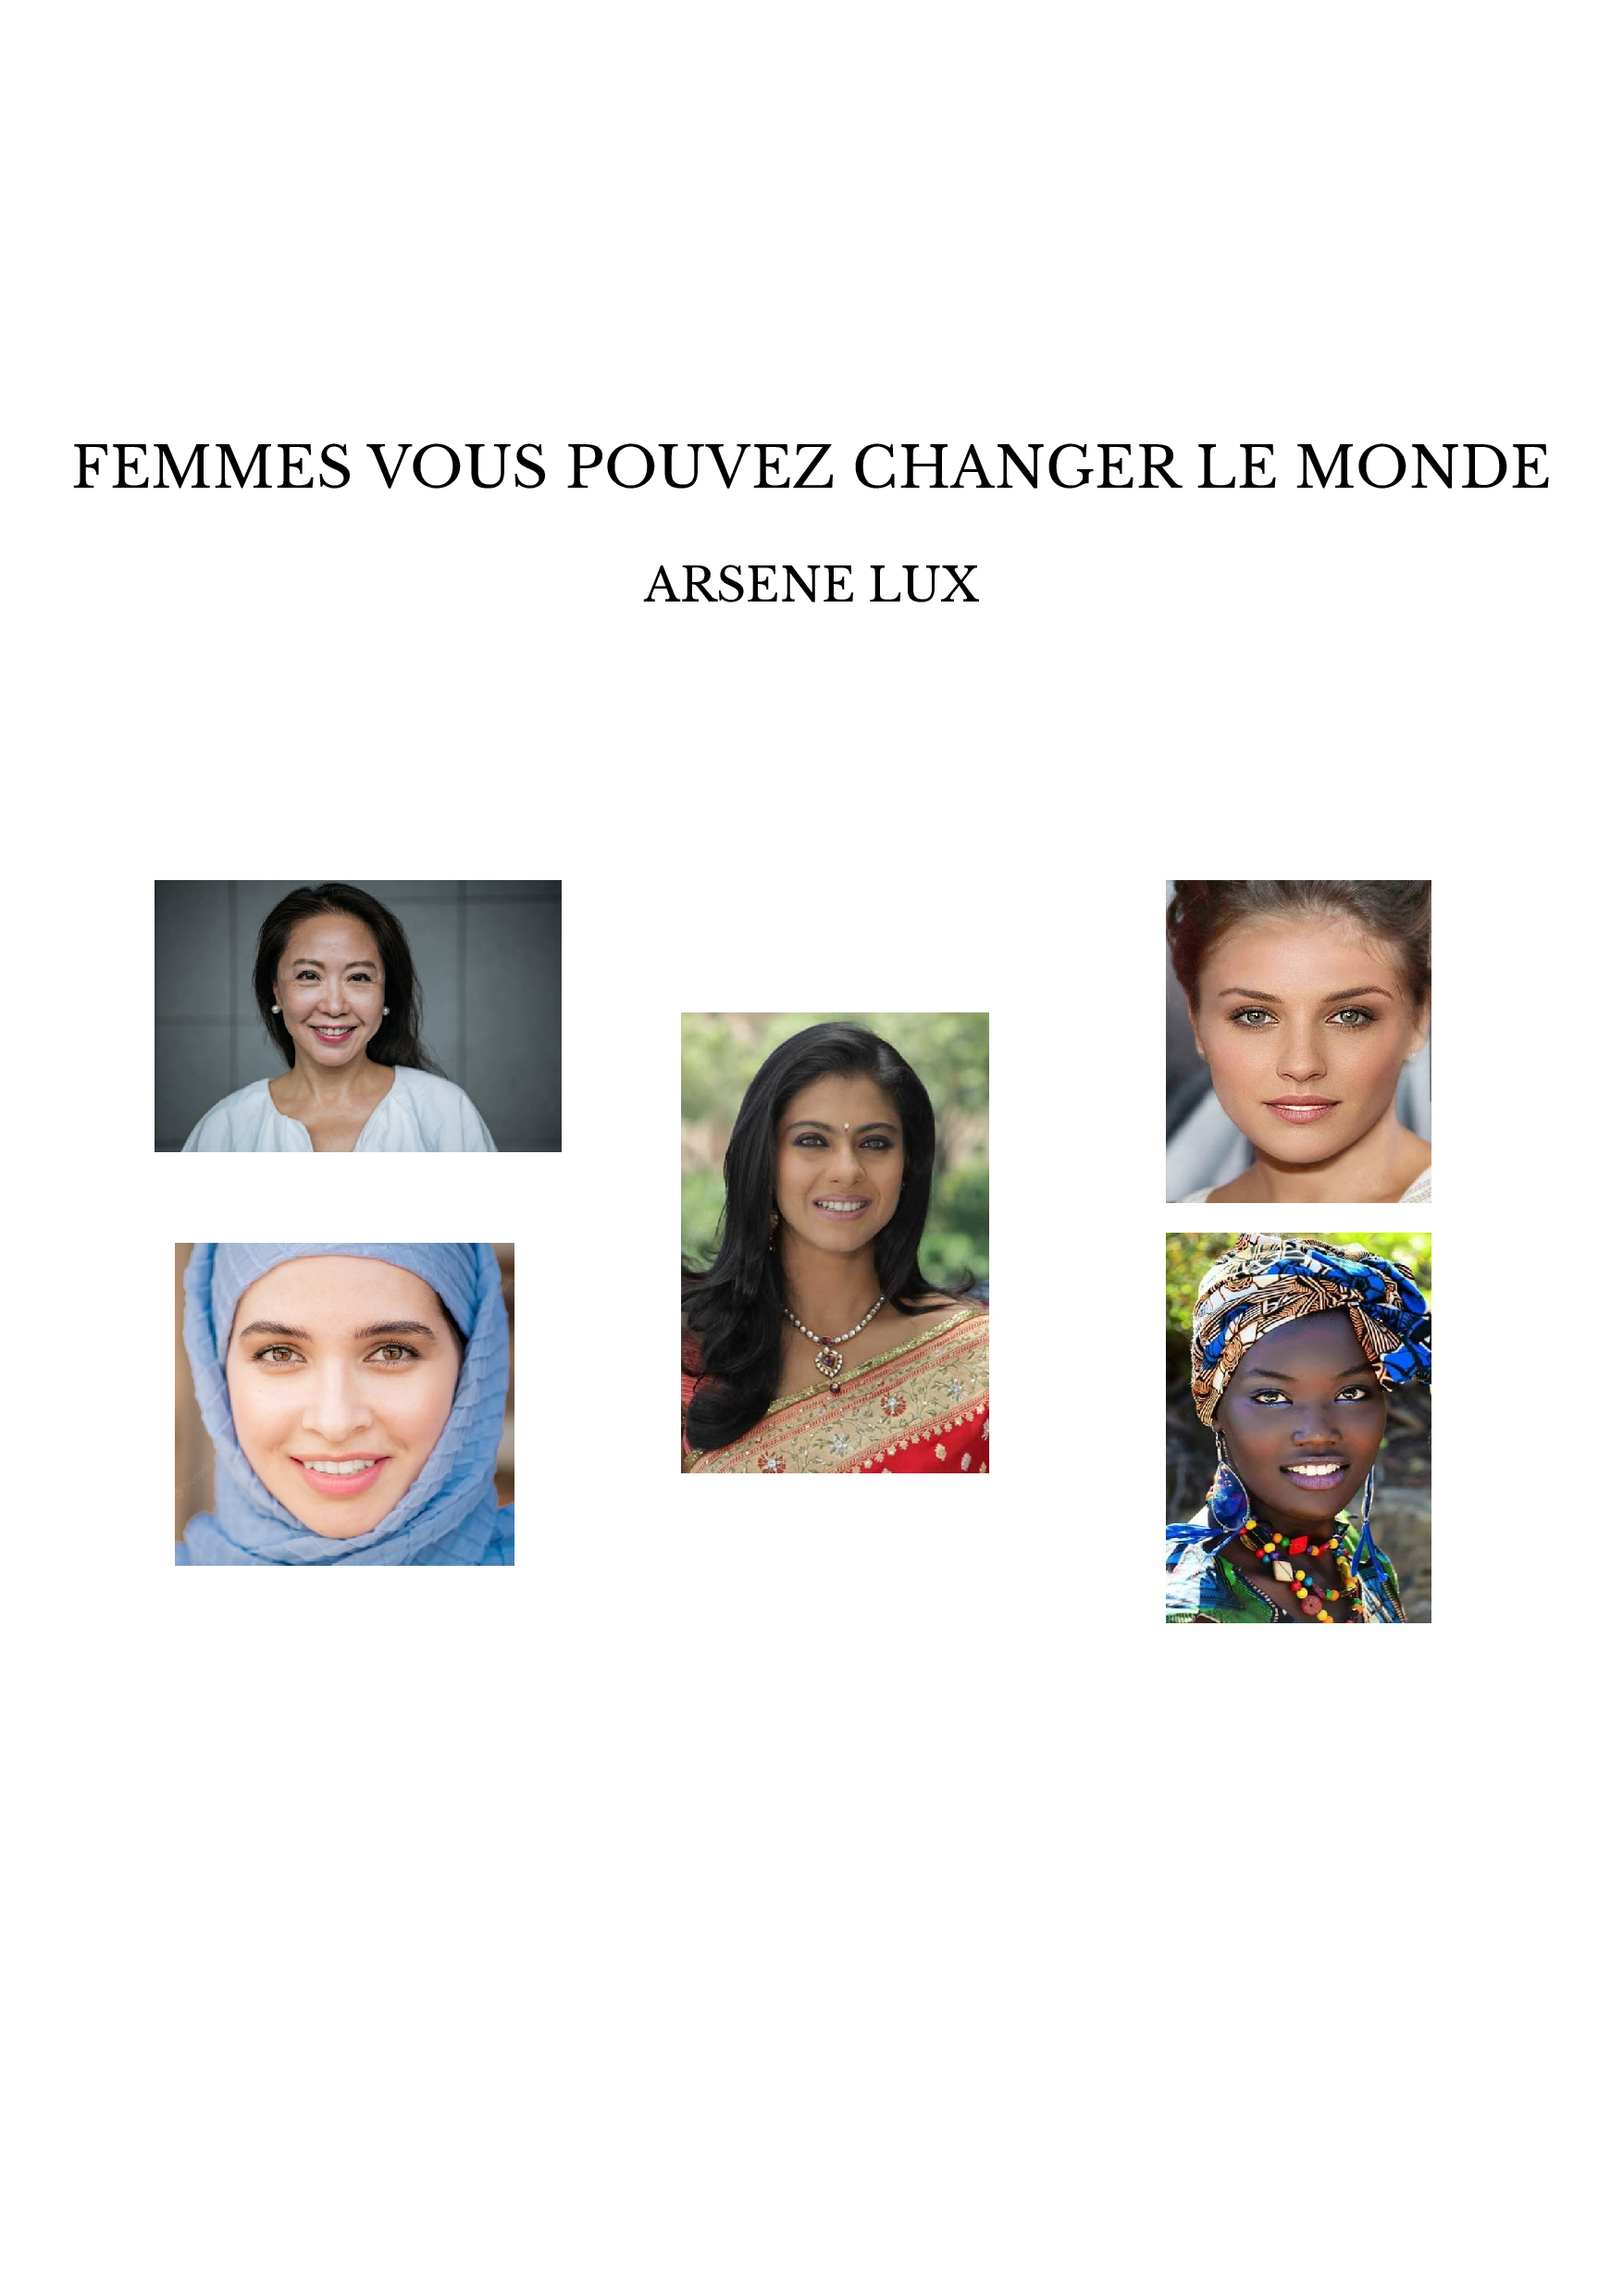 FEMMES VOUS POUVEZ CHANGER LE MONDE